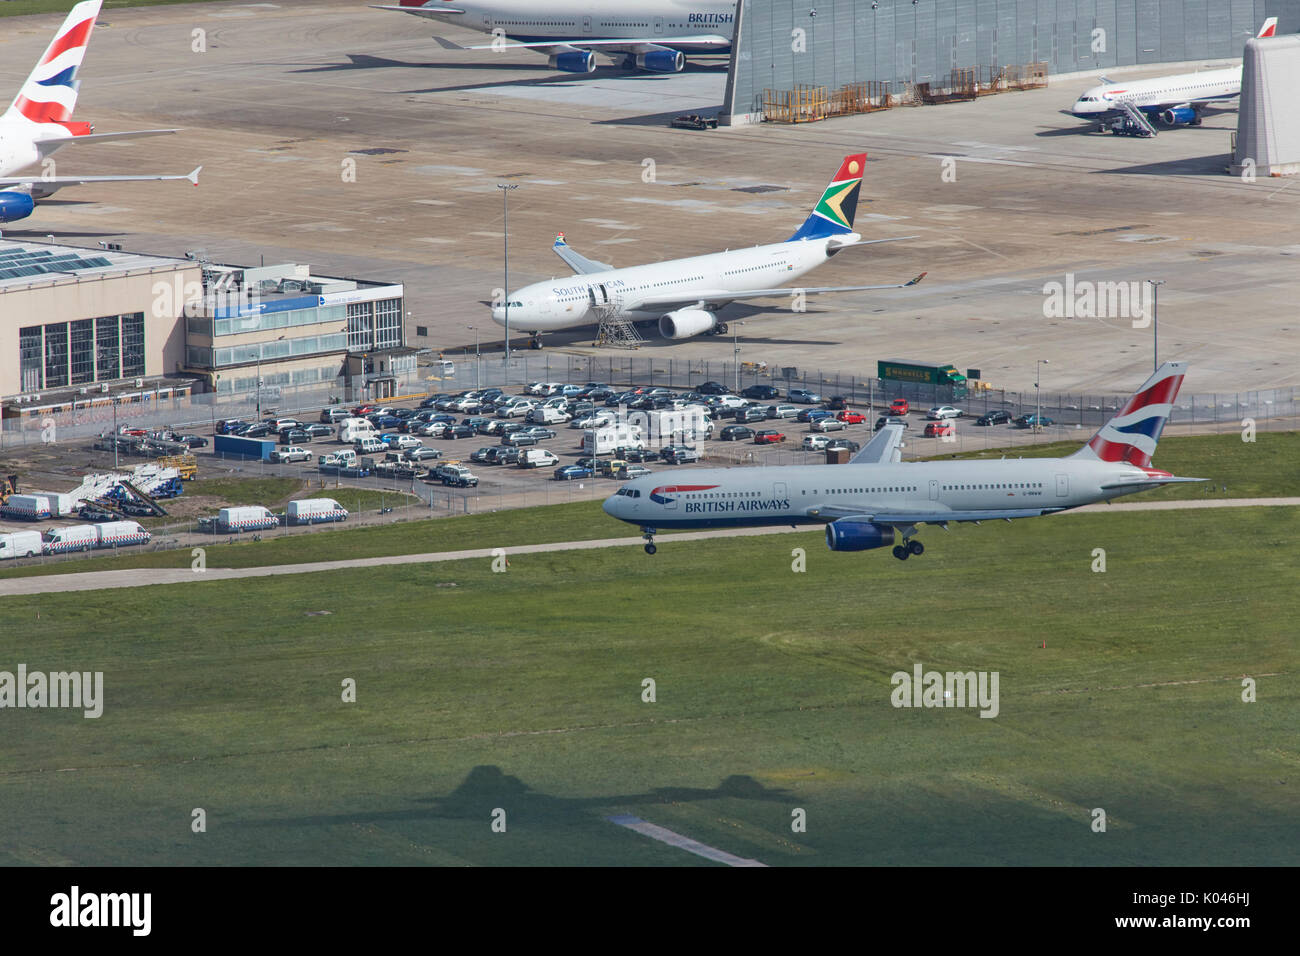 Une vue aérienne d'un avion de passagers à l'atterrissage à l'aéroport de Heathrow, Londres Banque D'Images